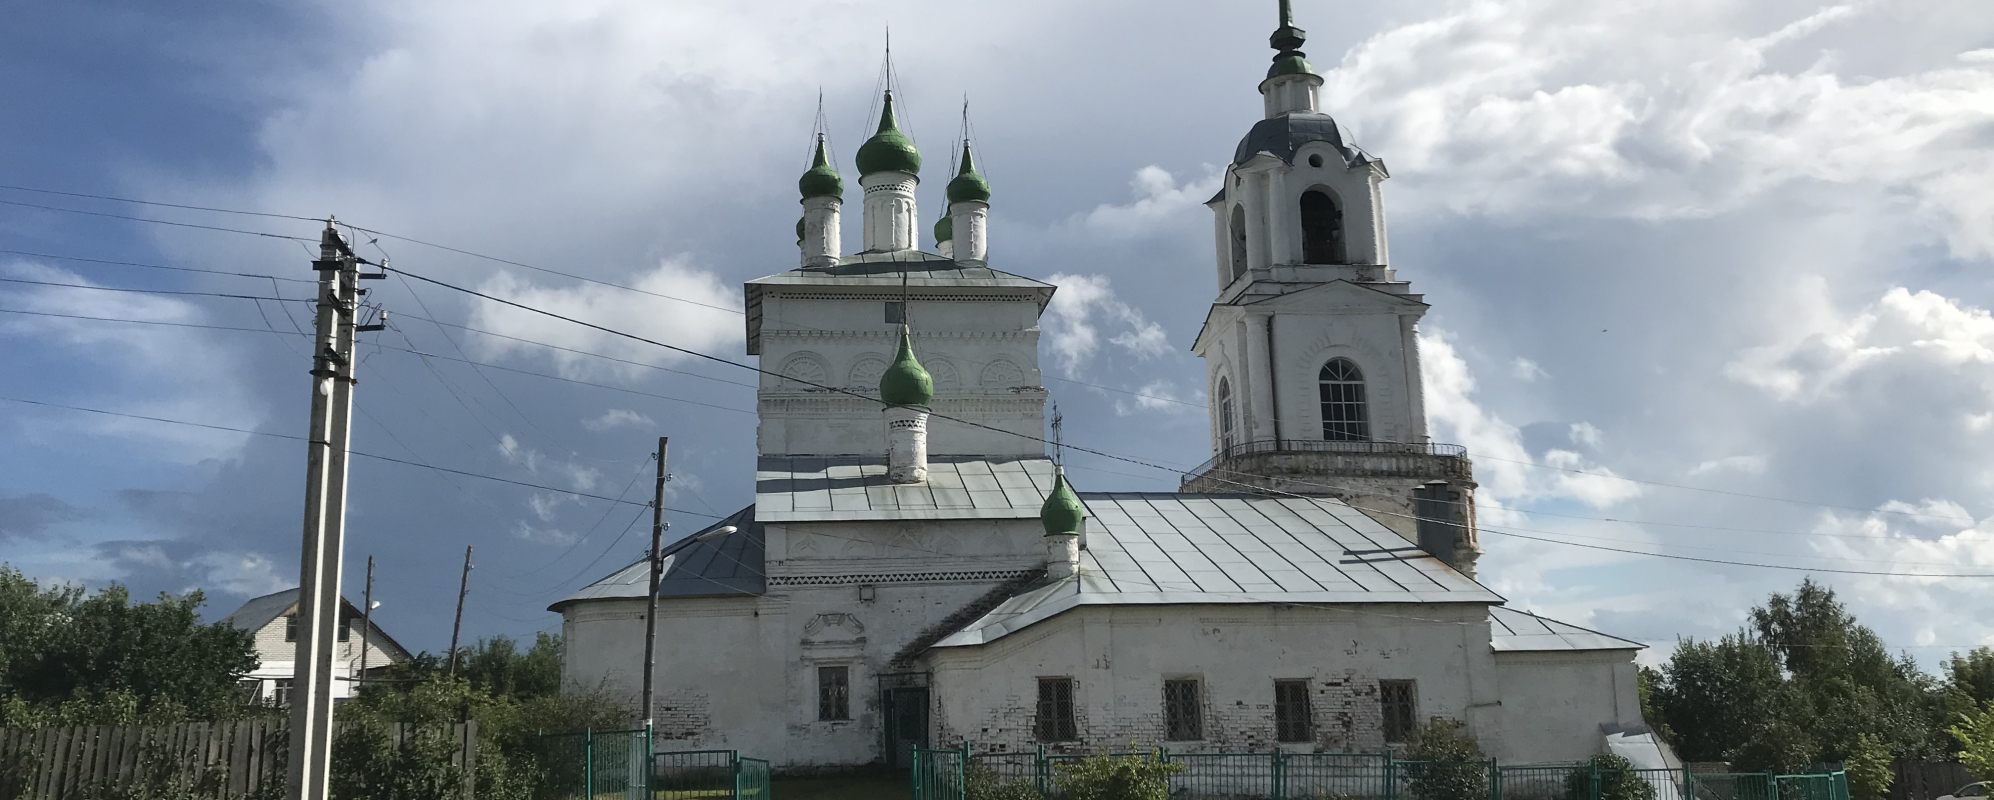 Фотографии храма Богоявленская церковь